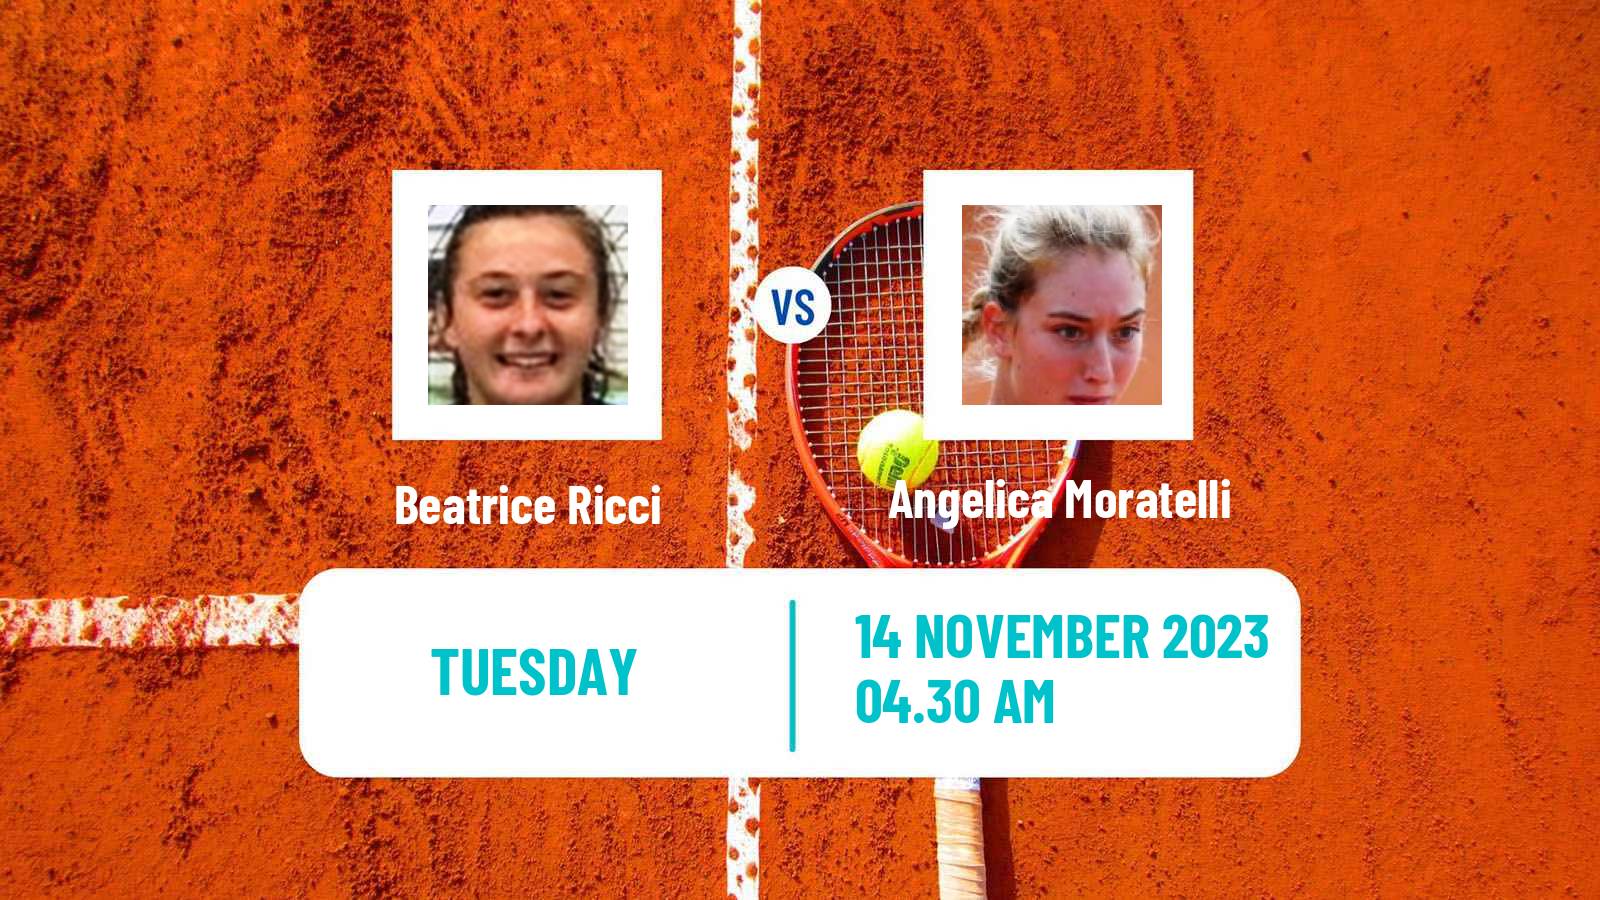 Tennis ITF W25 Solarino 3 Women Beatrice Ricci - Angelica Moratelli